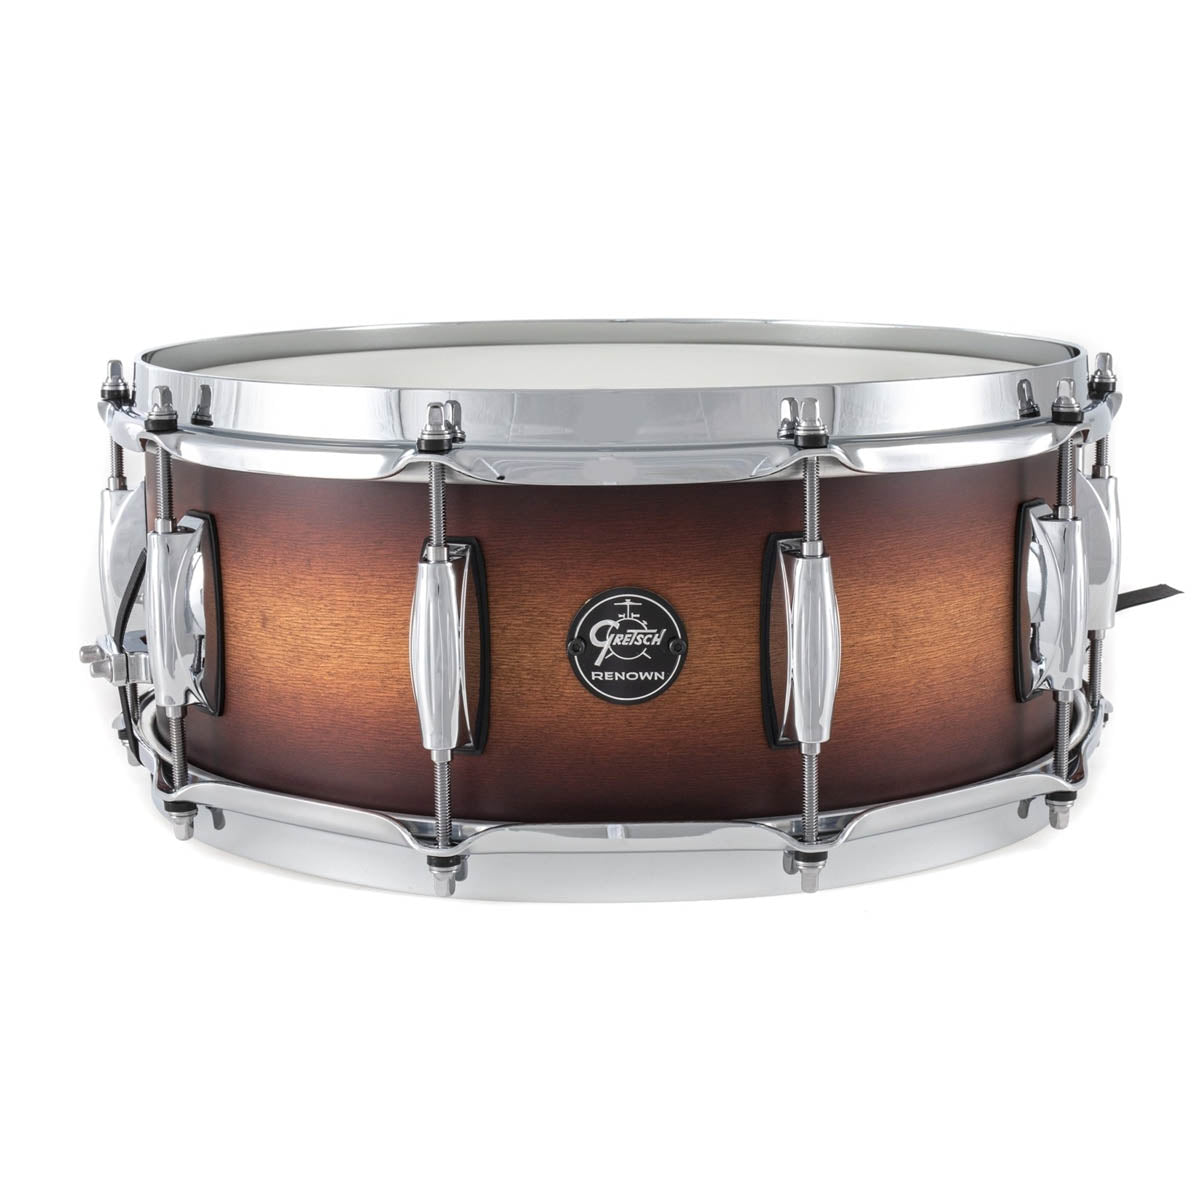 Gretsch Renown Maple 14"x5.5" Snare Drum in Satin Tobacco Burst